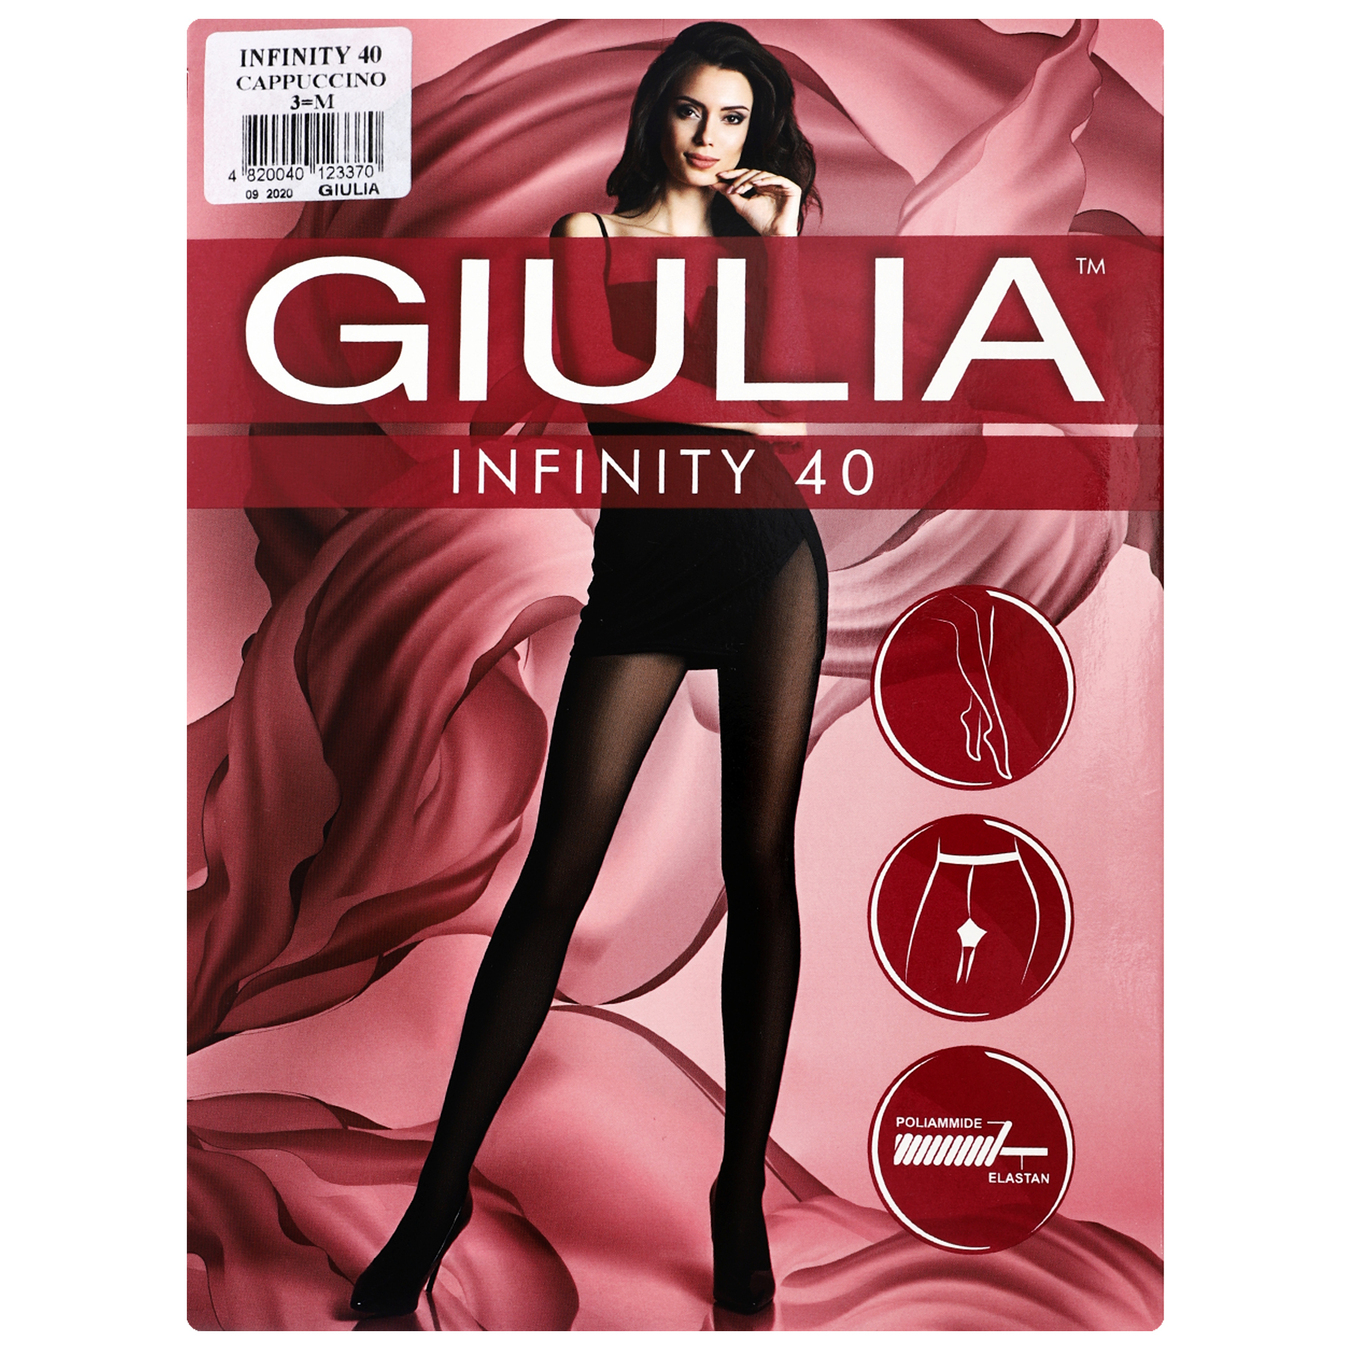 Women's pantyhose Giulia Infinity 40 den cappuccino size 3